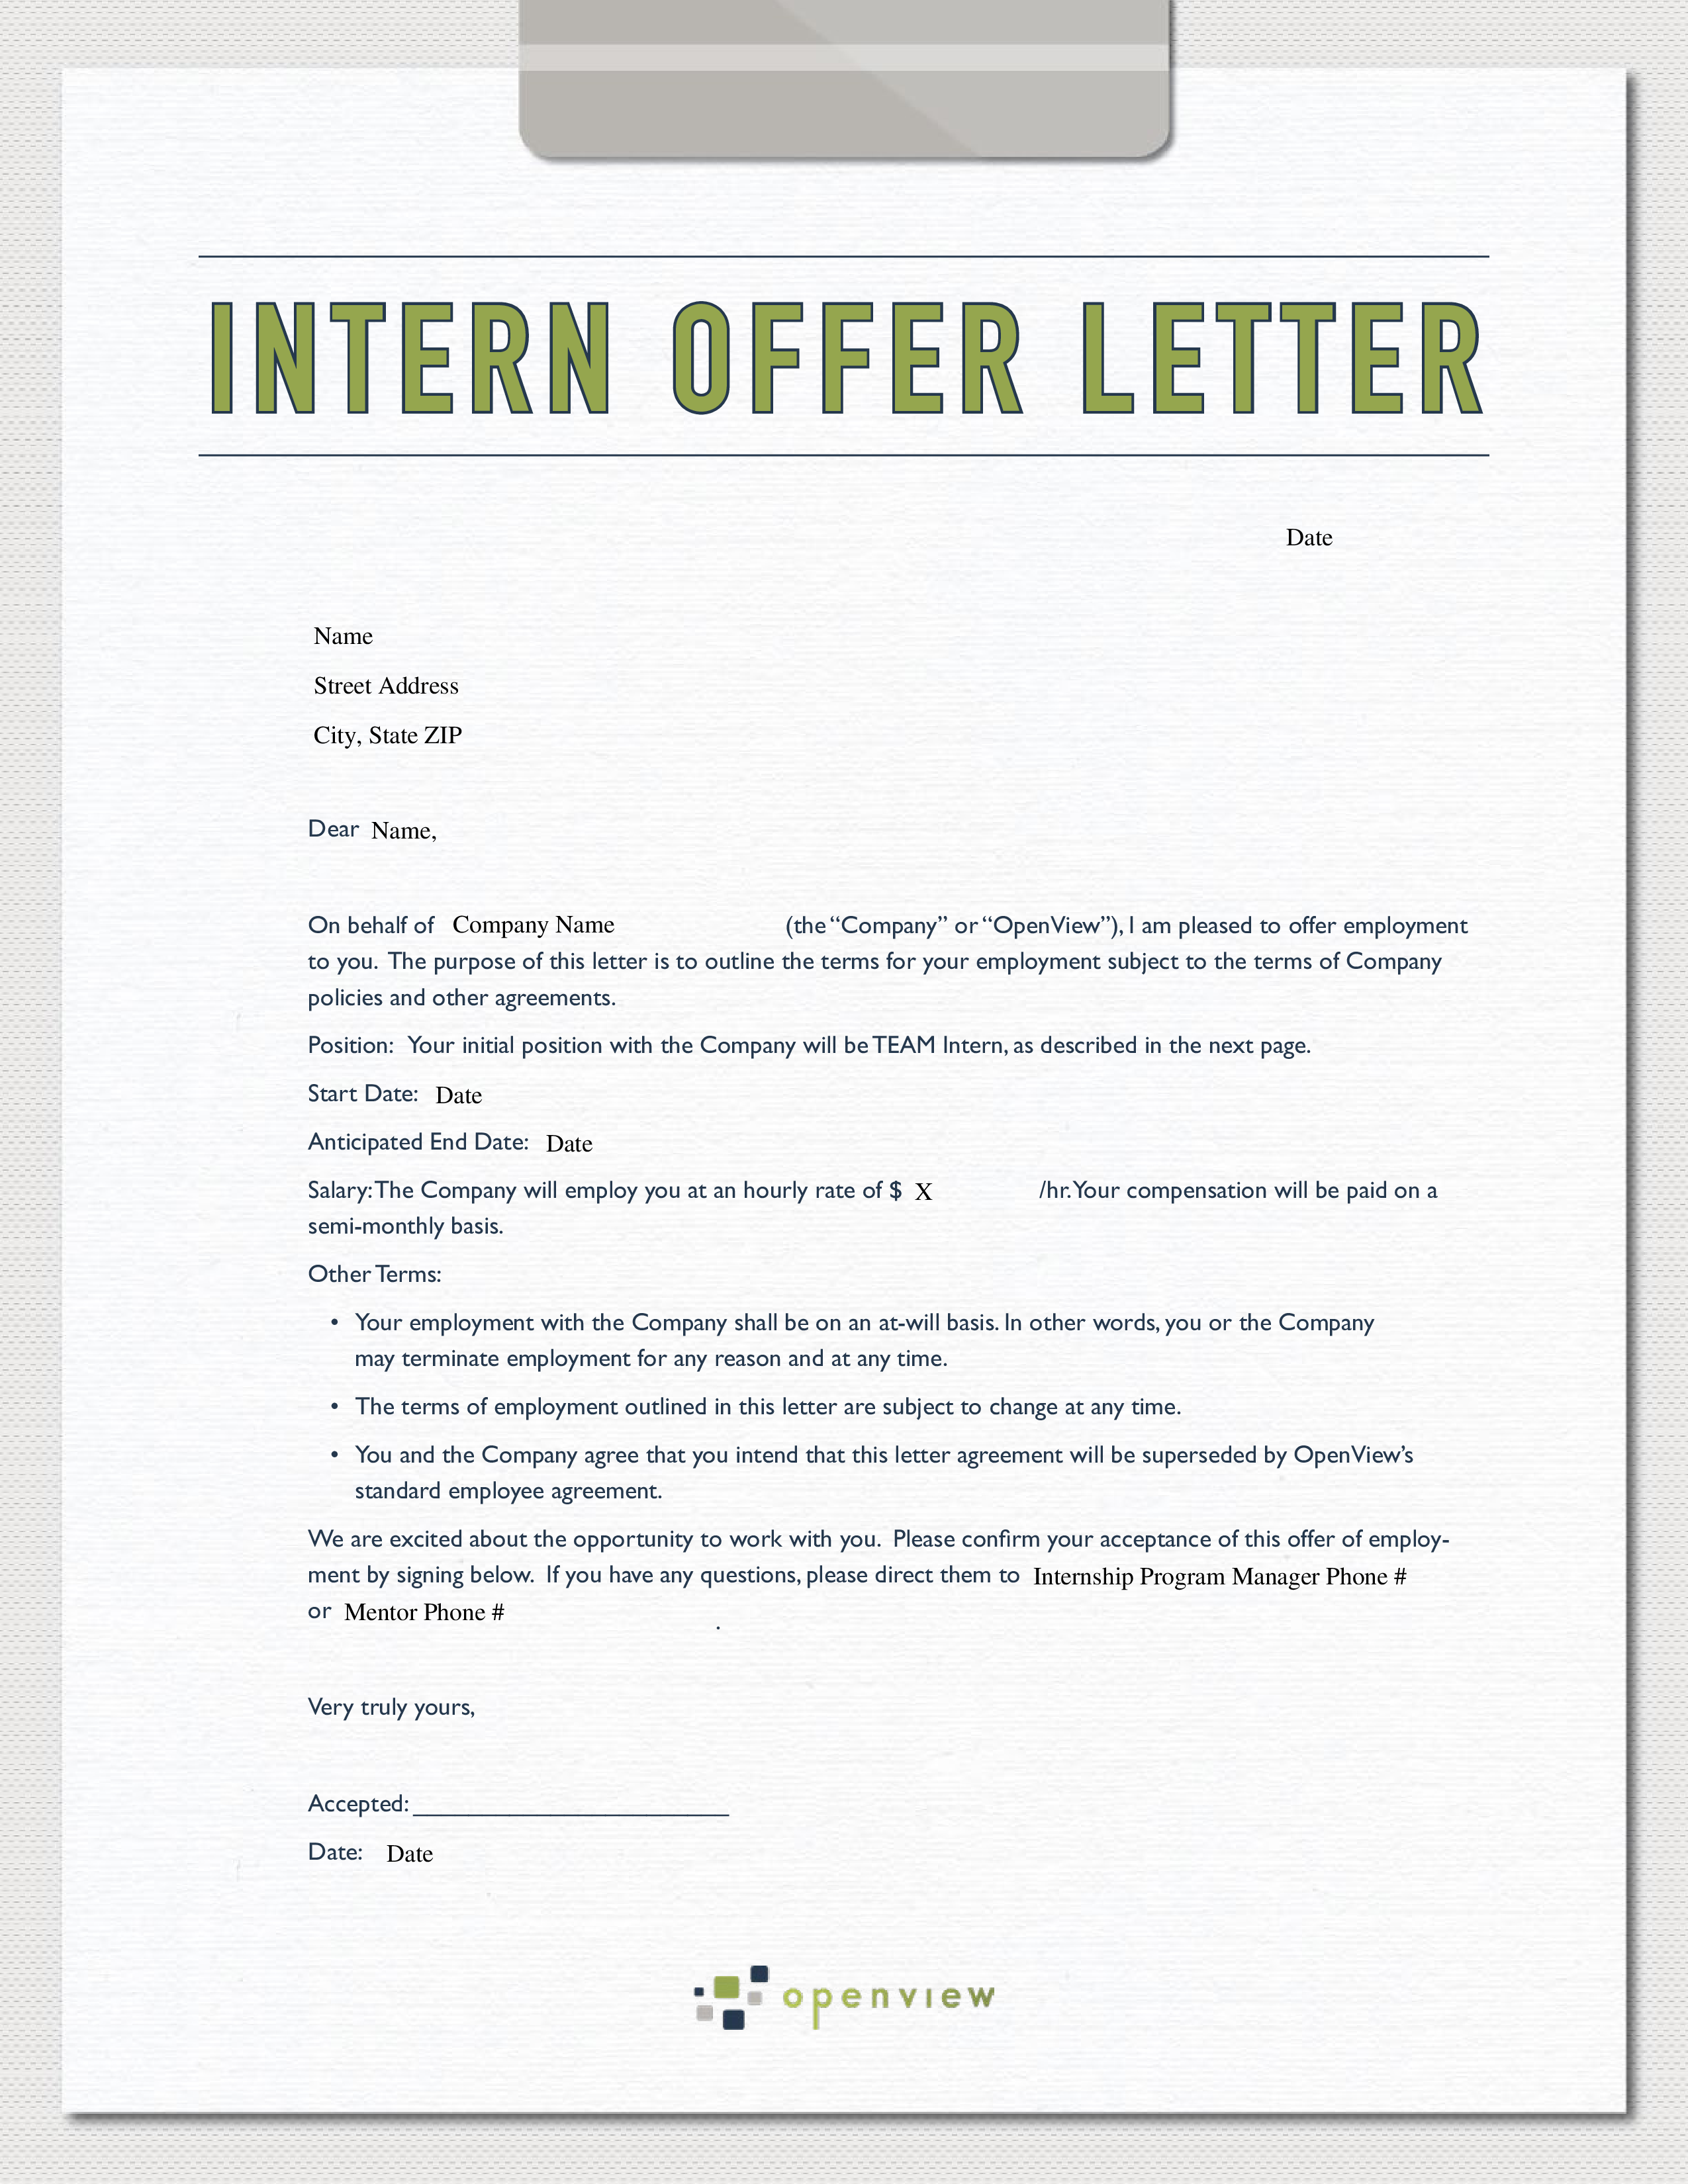 sample marketing internship offer letter plantilla imagen principal